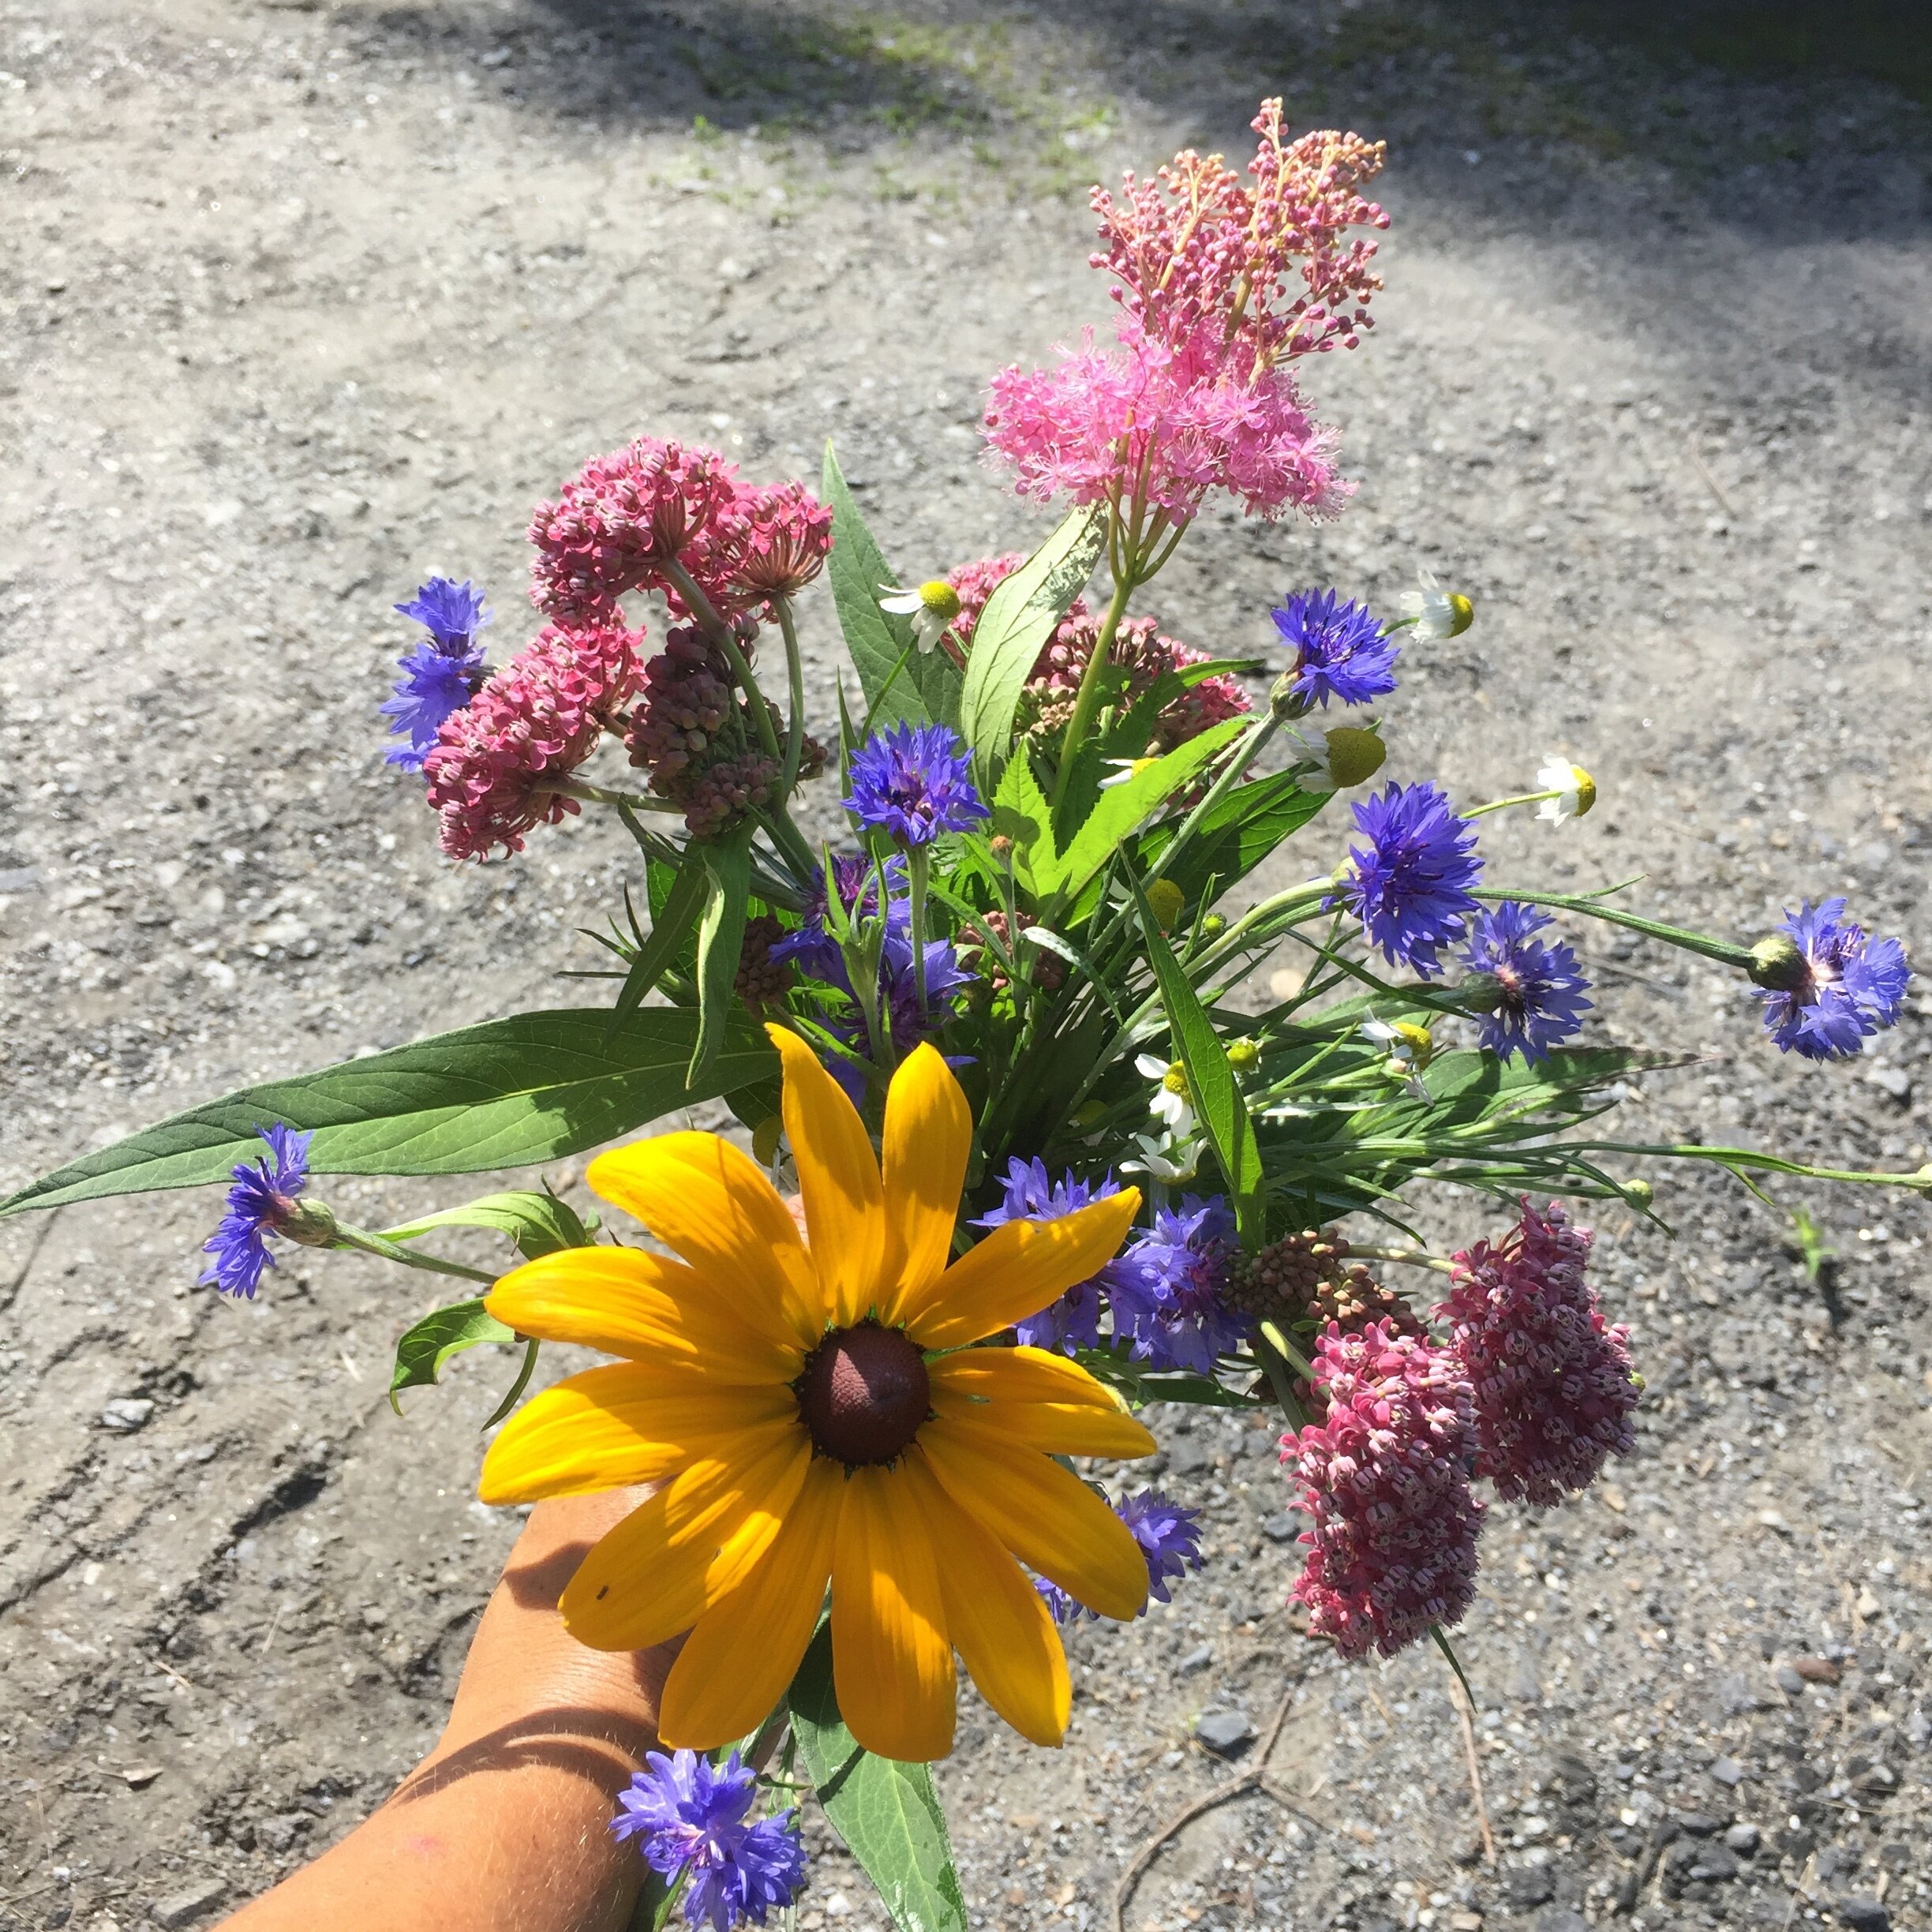 Locally Grown Flower Bouquet